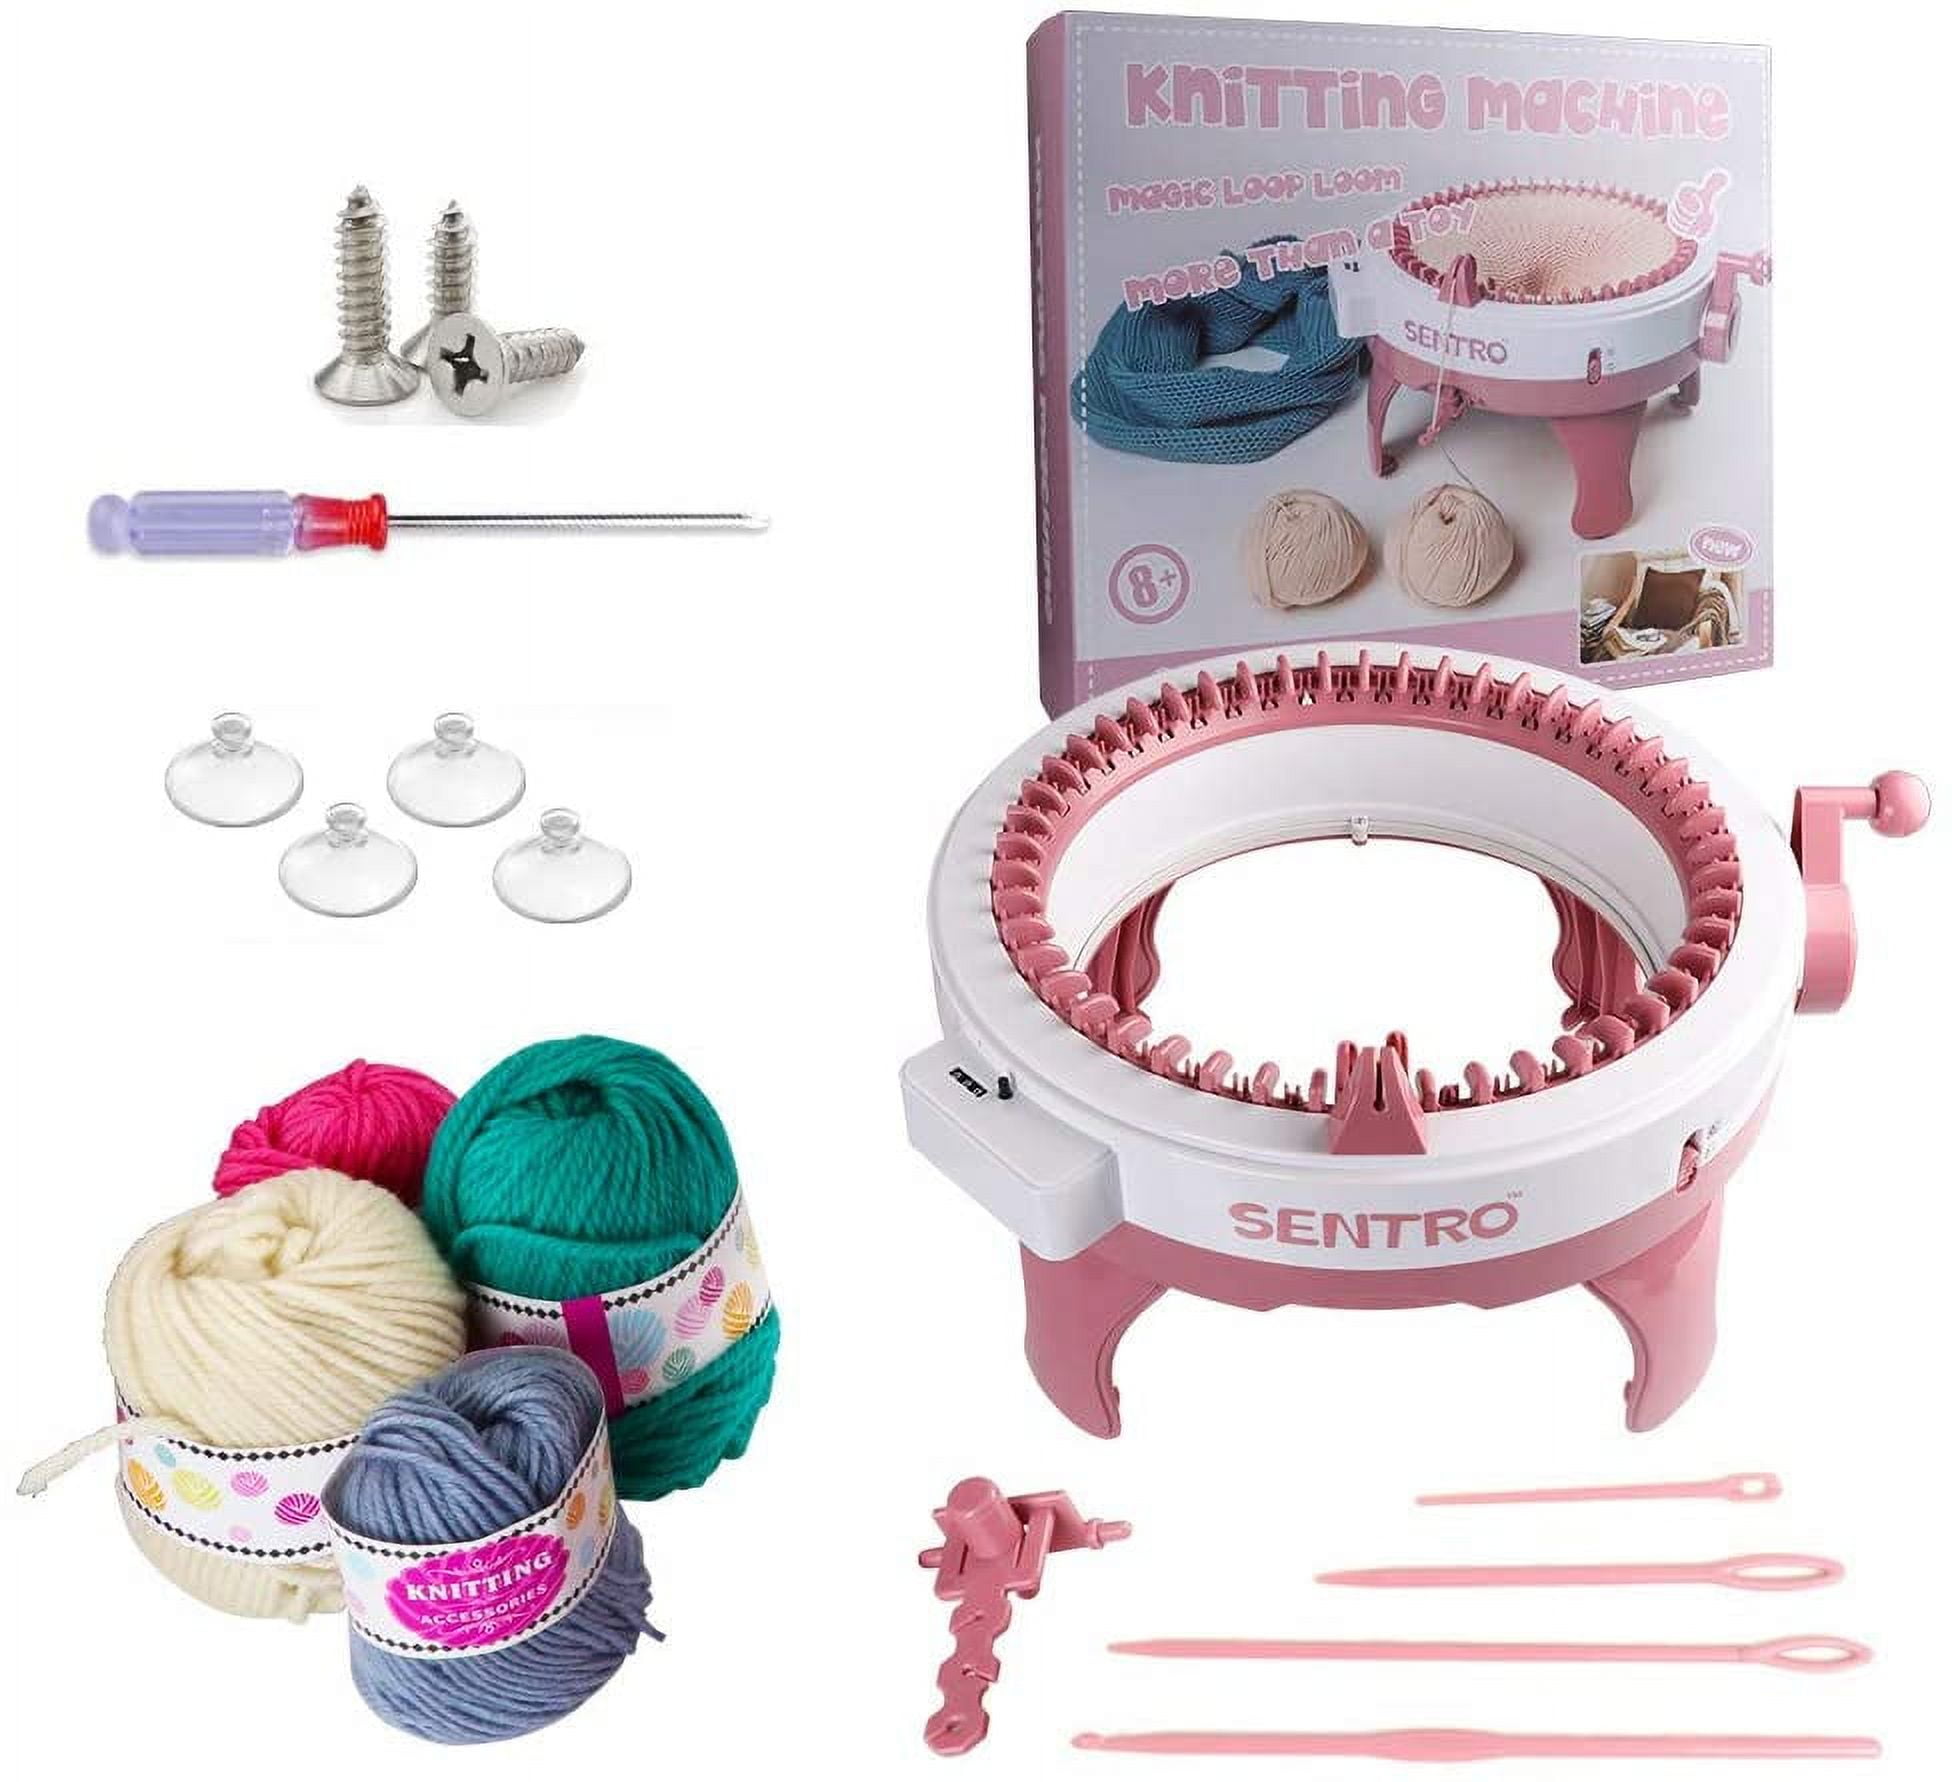  Abbcoert, 48 Needles Knitting Machine, Smart Weaving